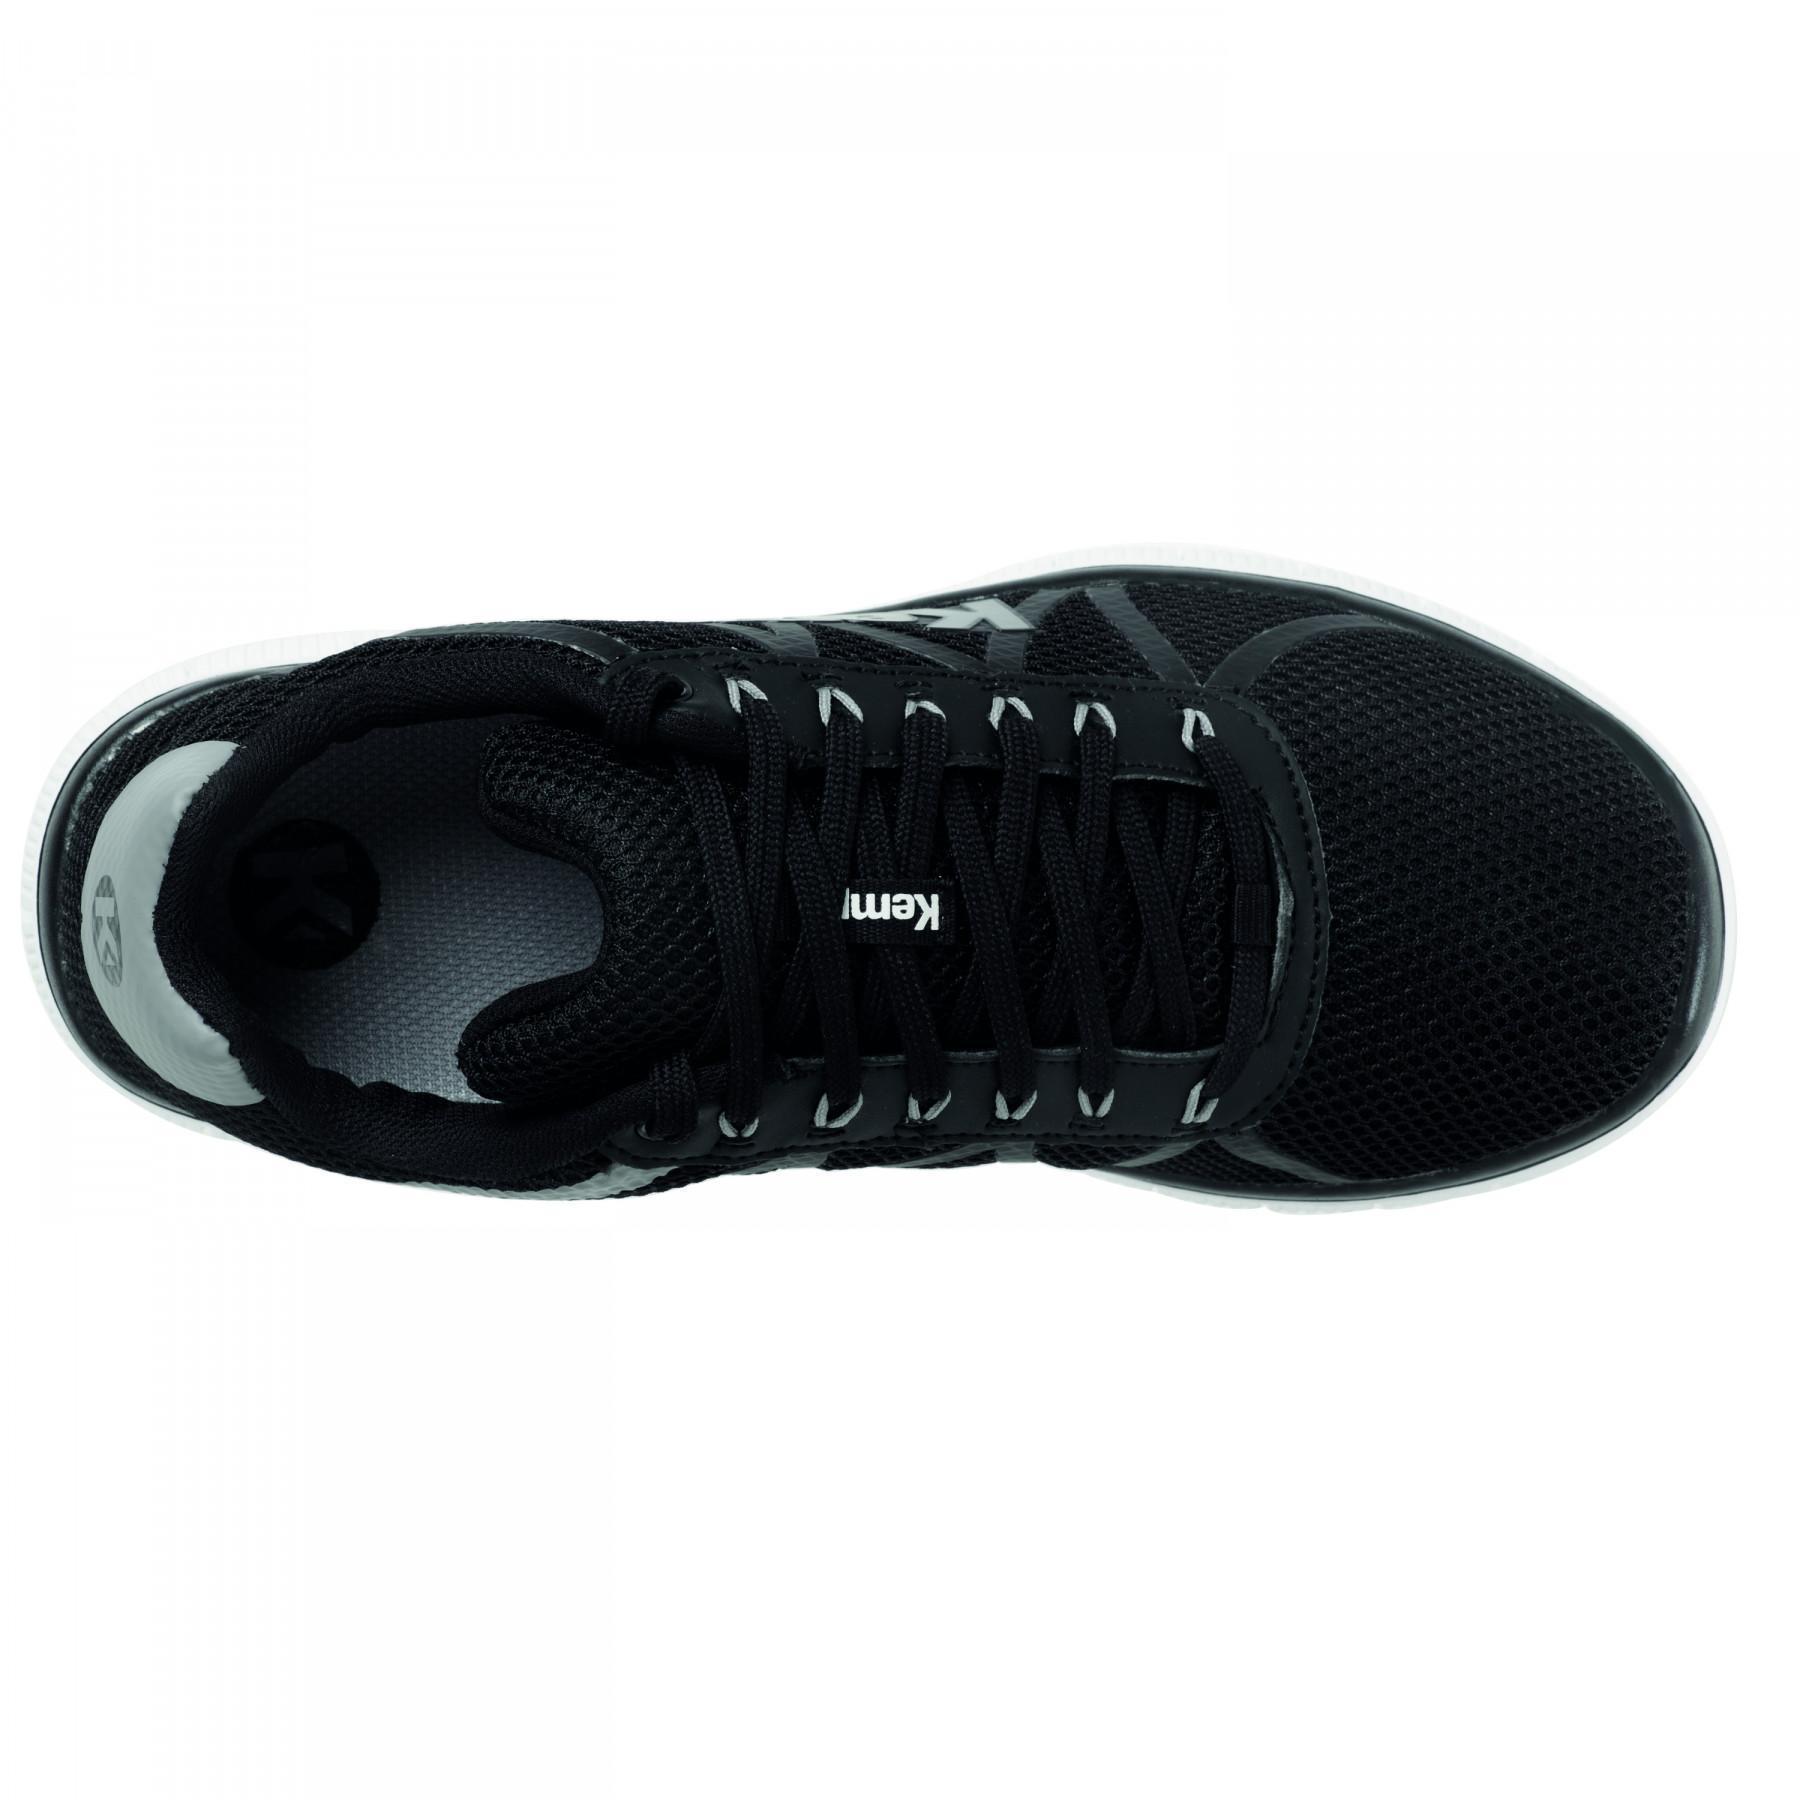 Shoes Kempa K-Float Noir/gris